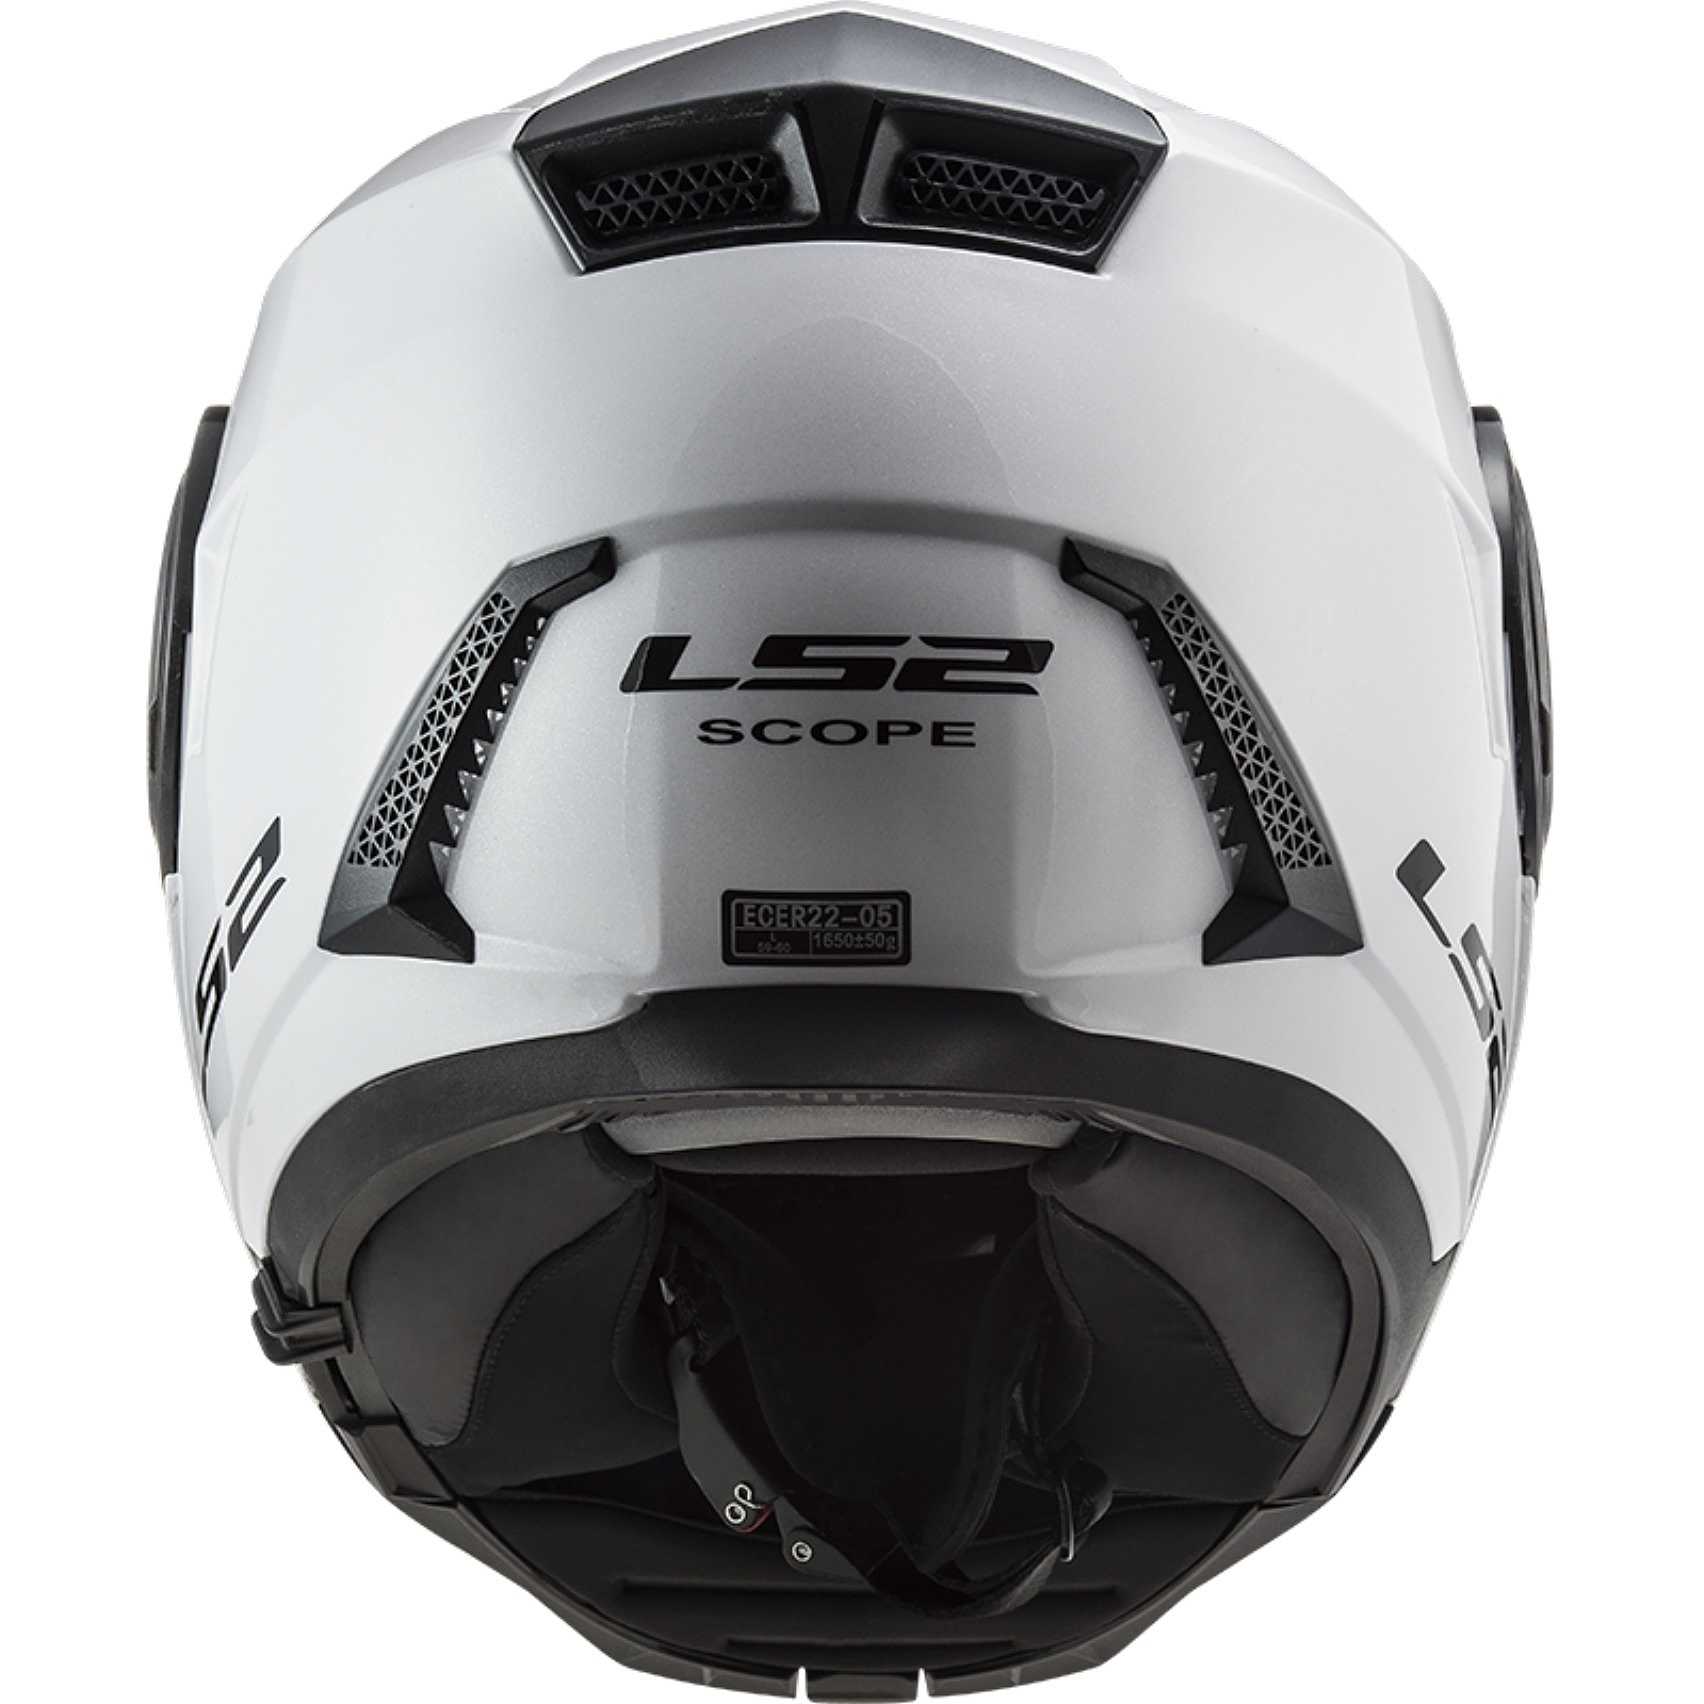 Visiera trasparente per casco LS2 FF902 Scope